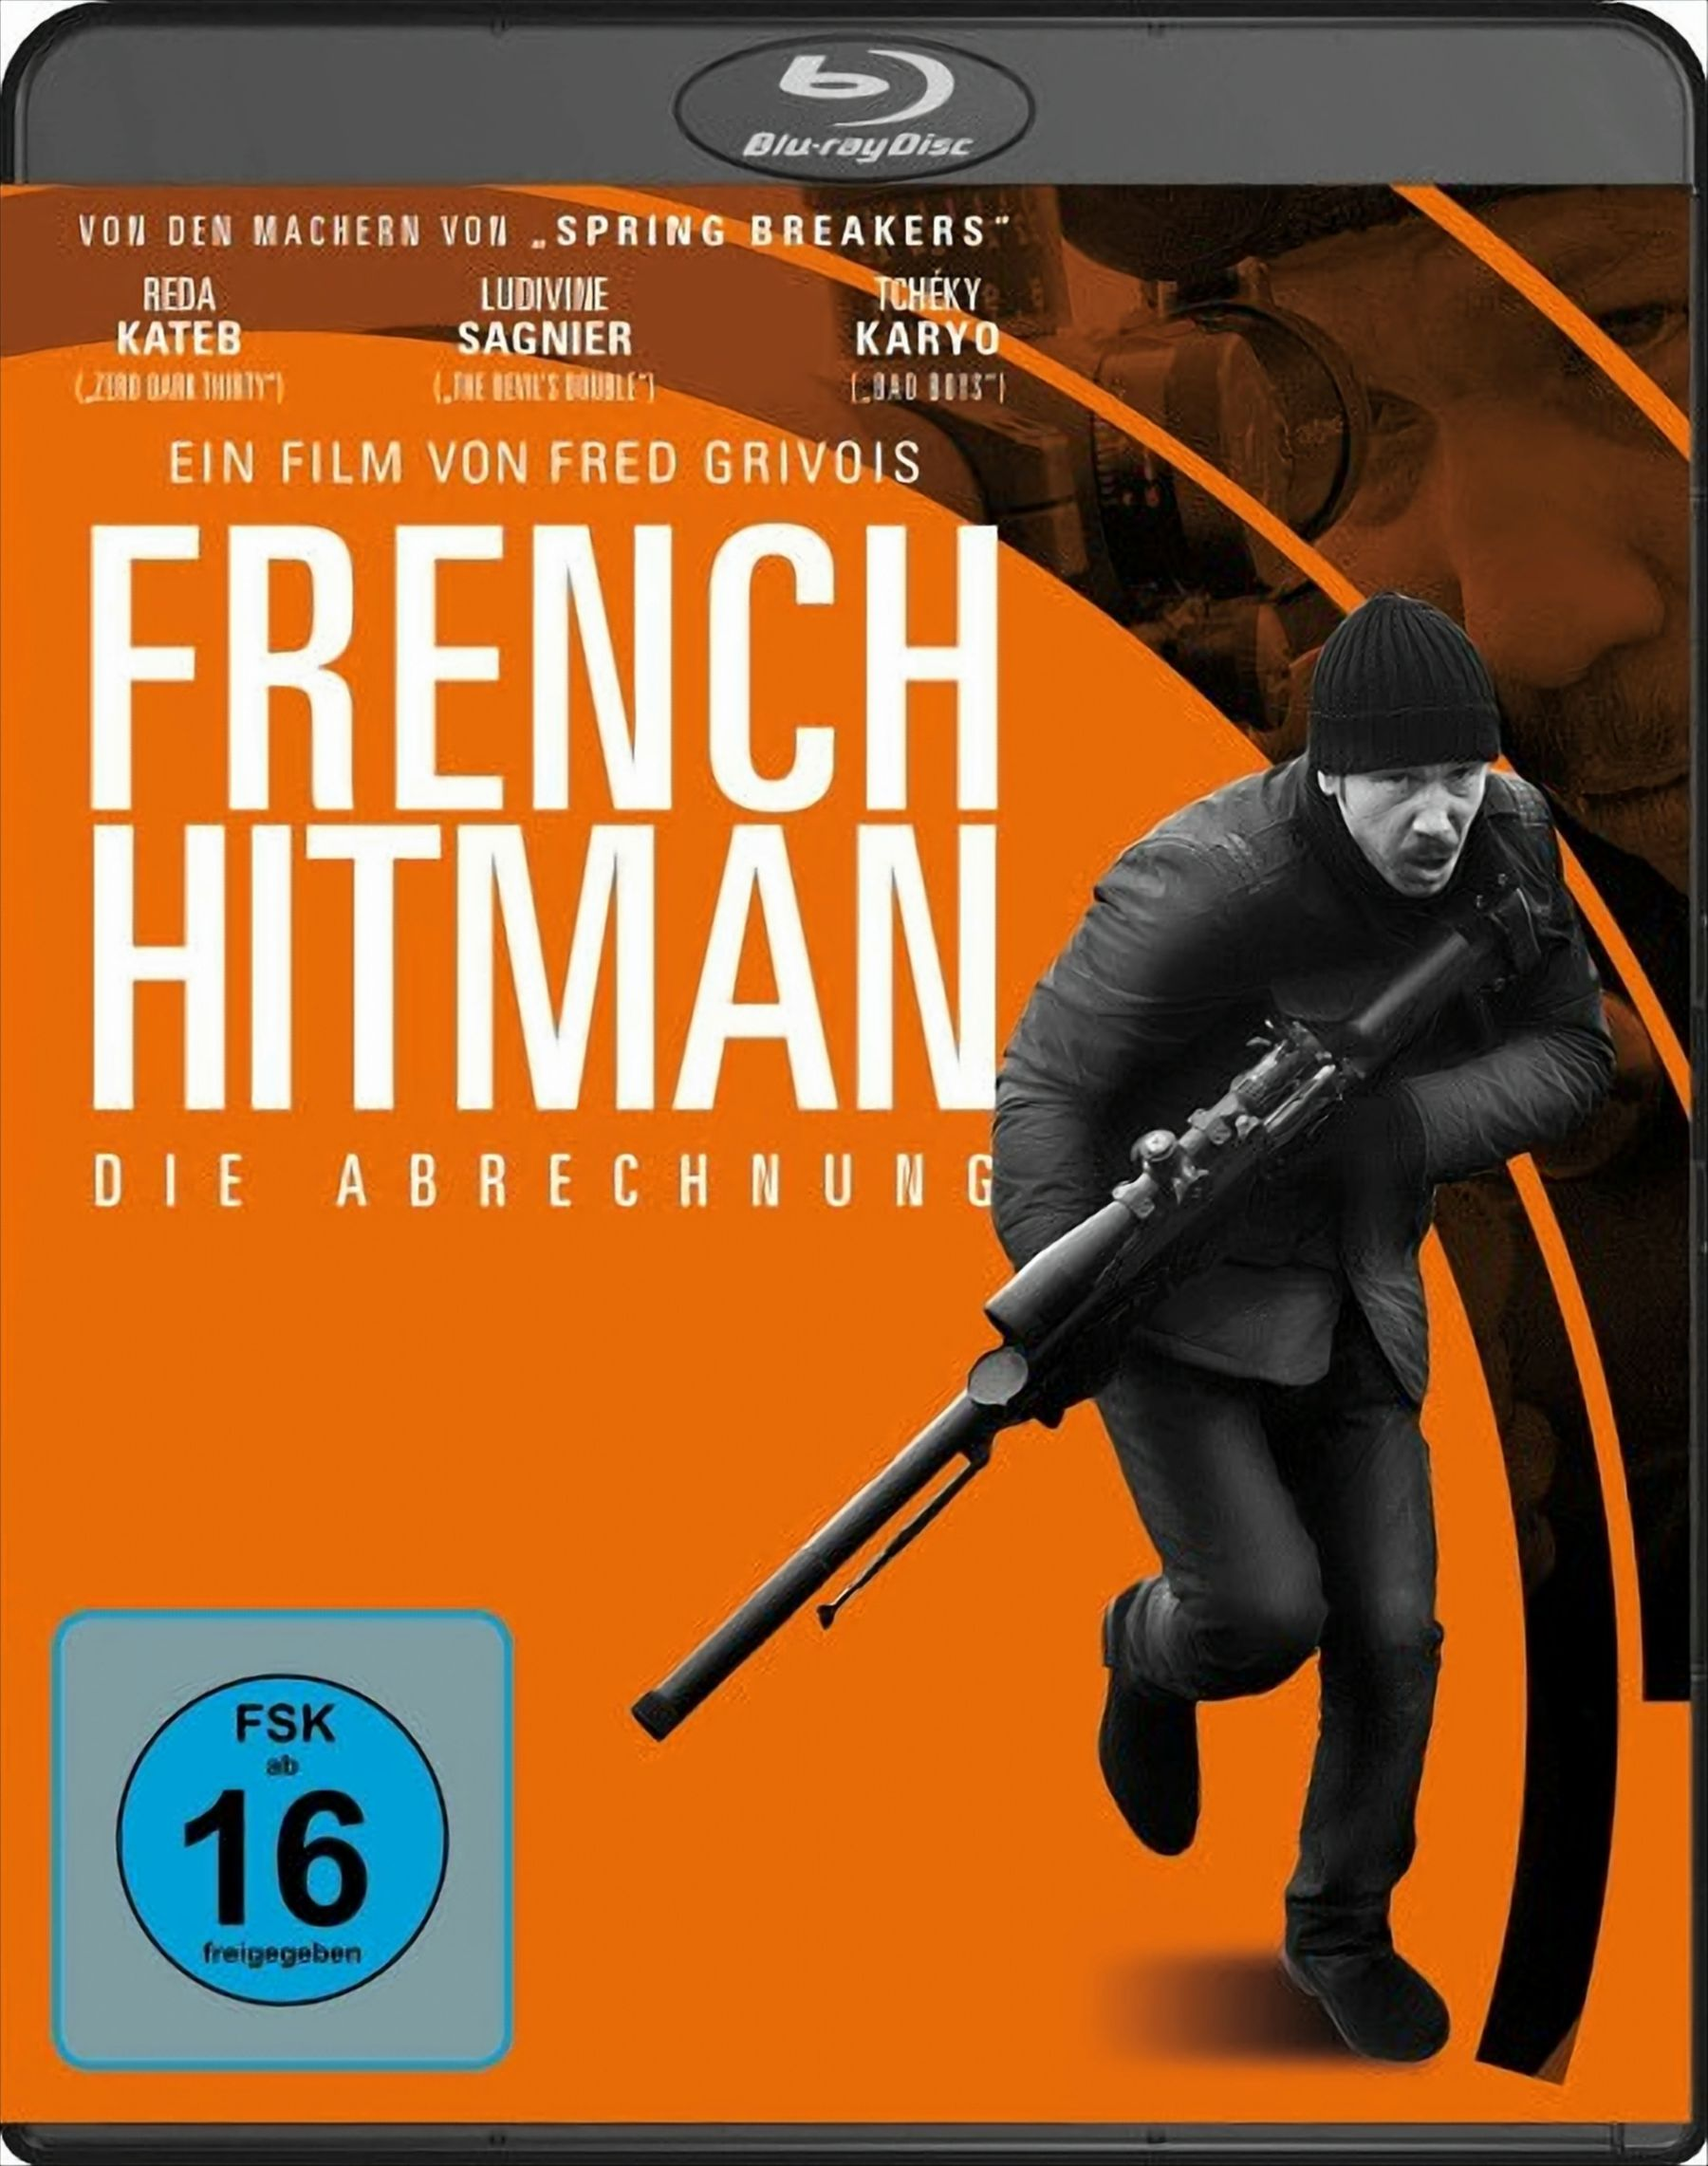 Abrechnung - Die Hitman Blu-ray French (Blu-ray)